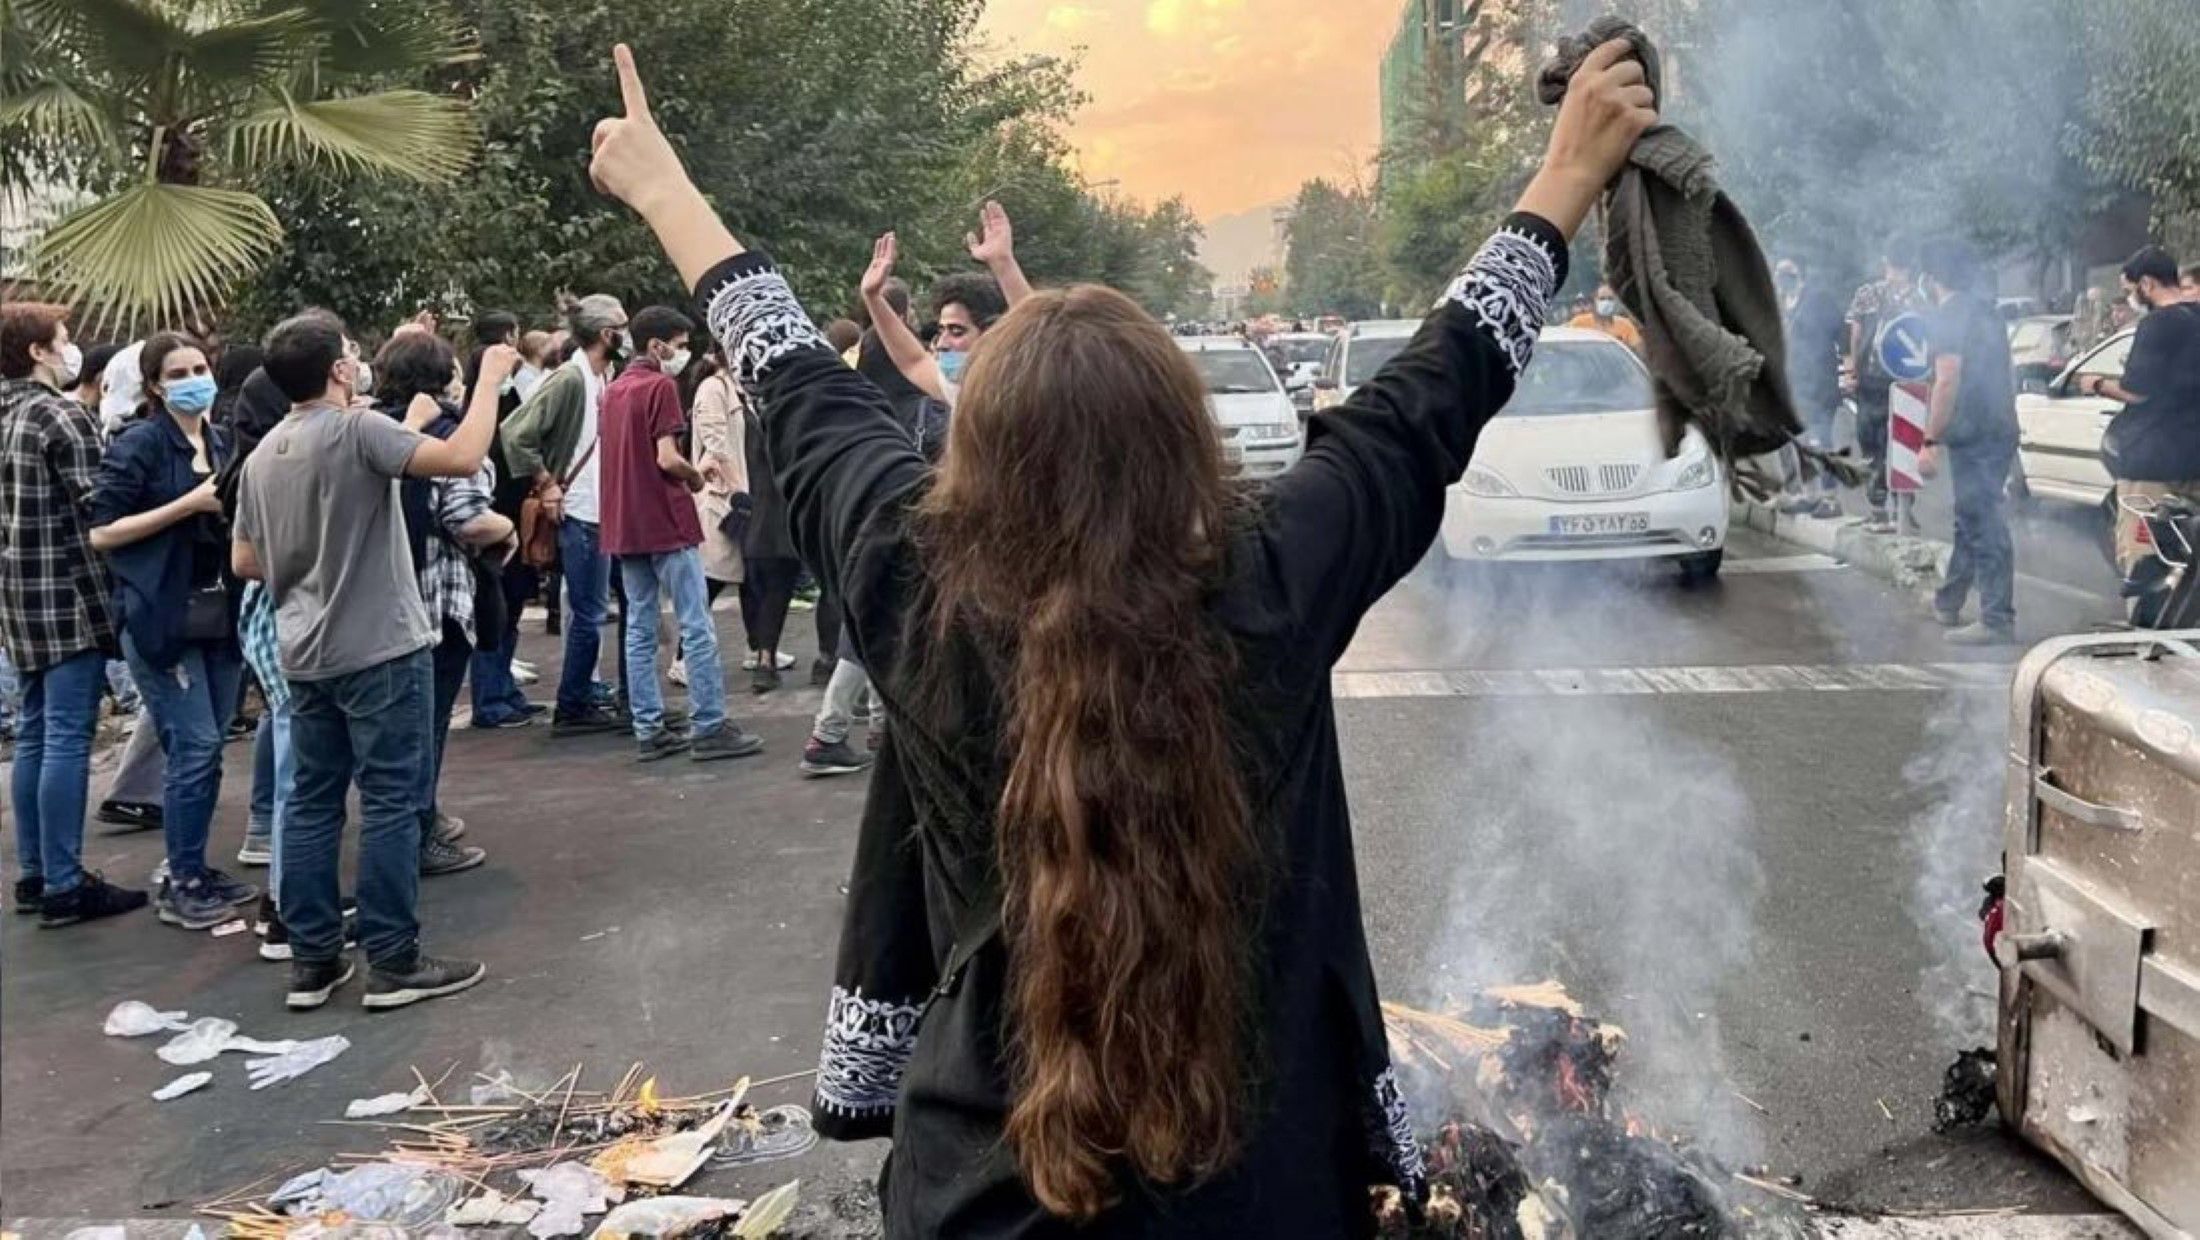 Proteste im Iran - Trauer, Wunden und Humor